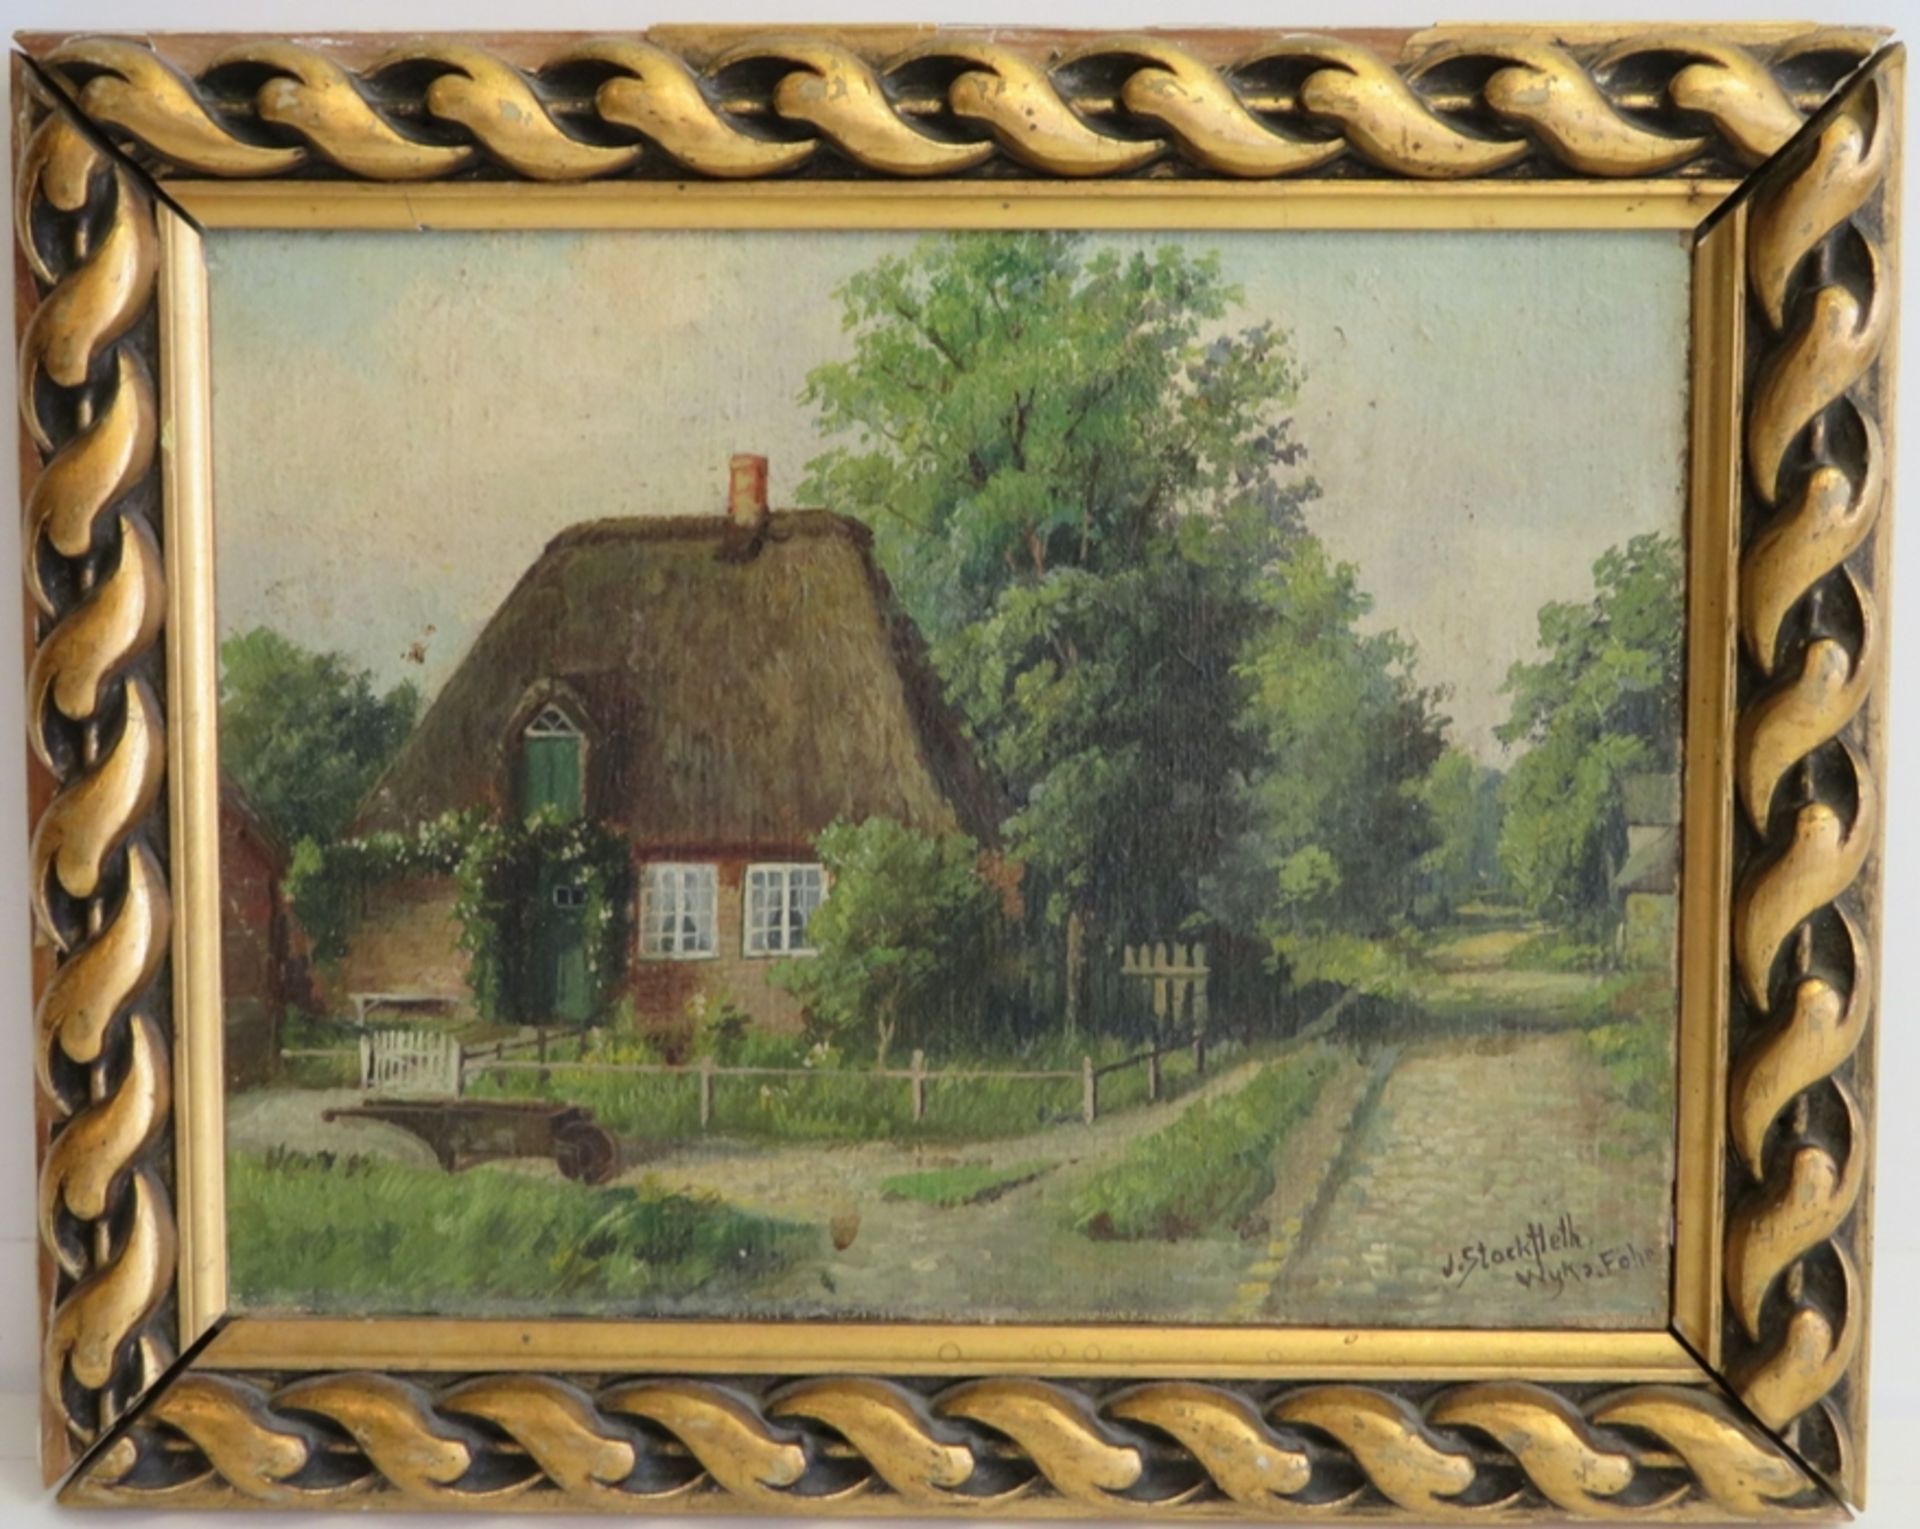 Stockfleth, Julius, 1857 - 1935, Wyk auf Föhr - ebd., deutscher Zeichner und Maler, 